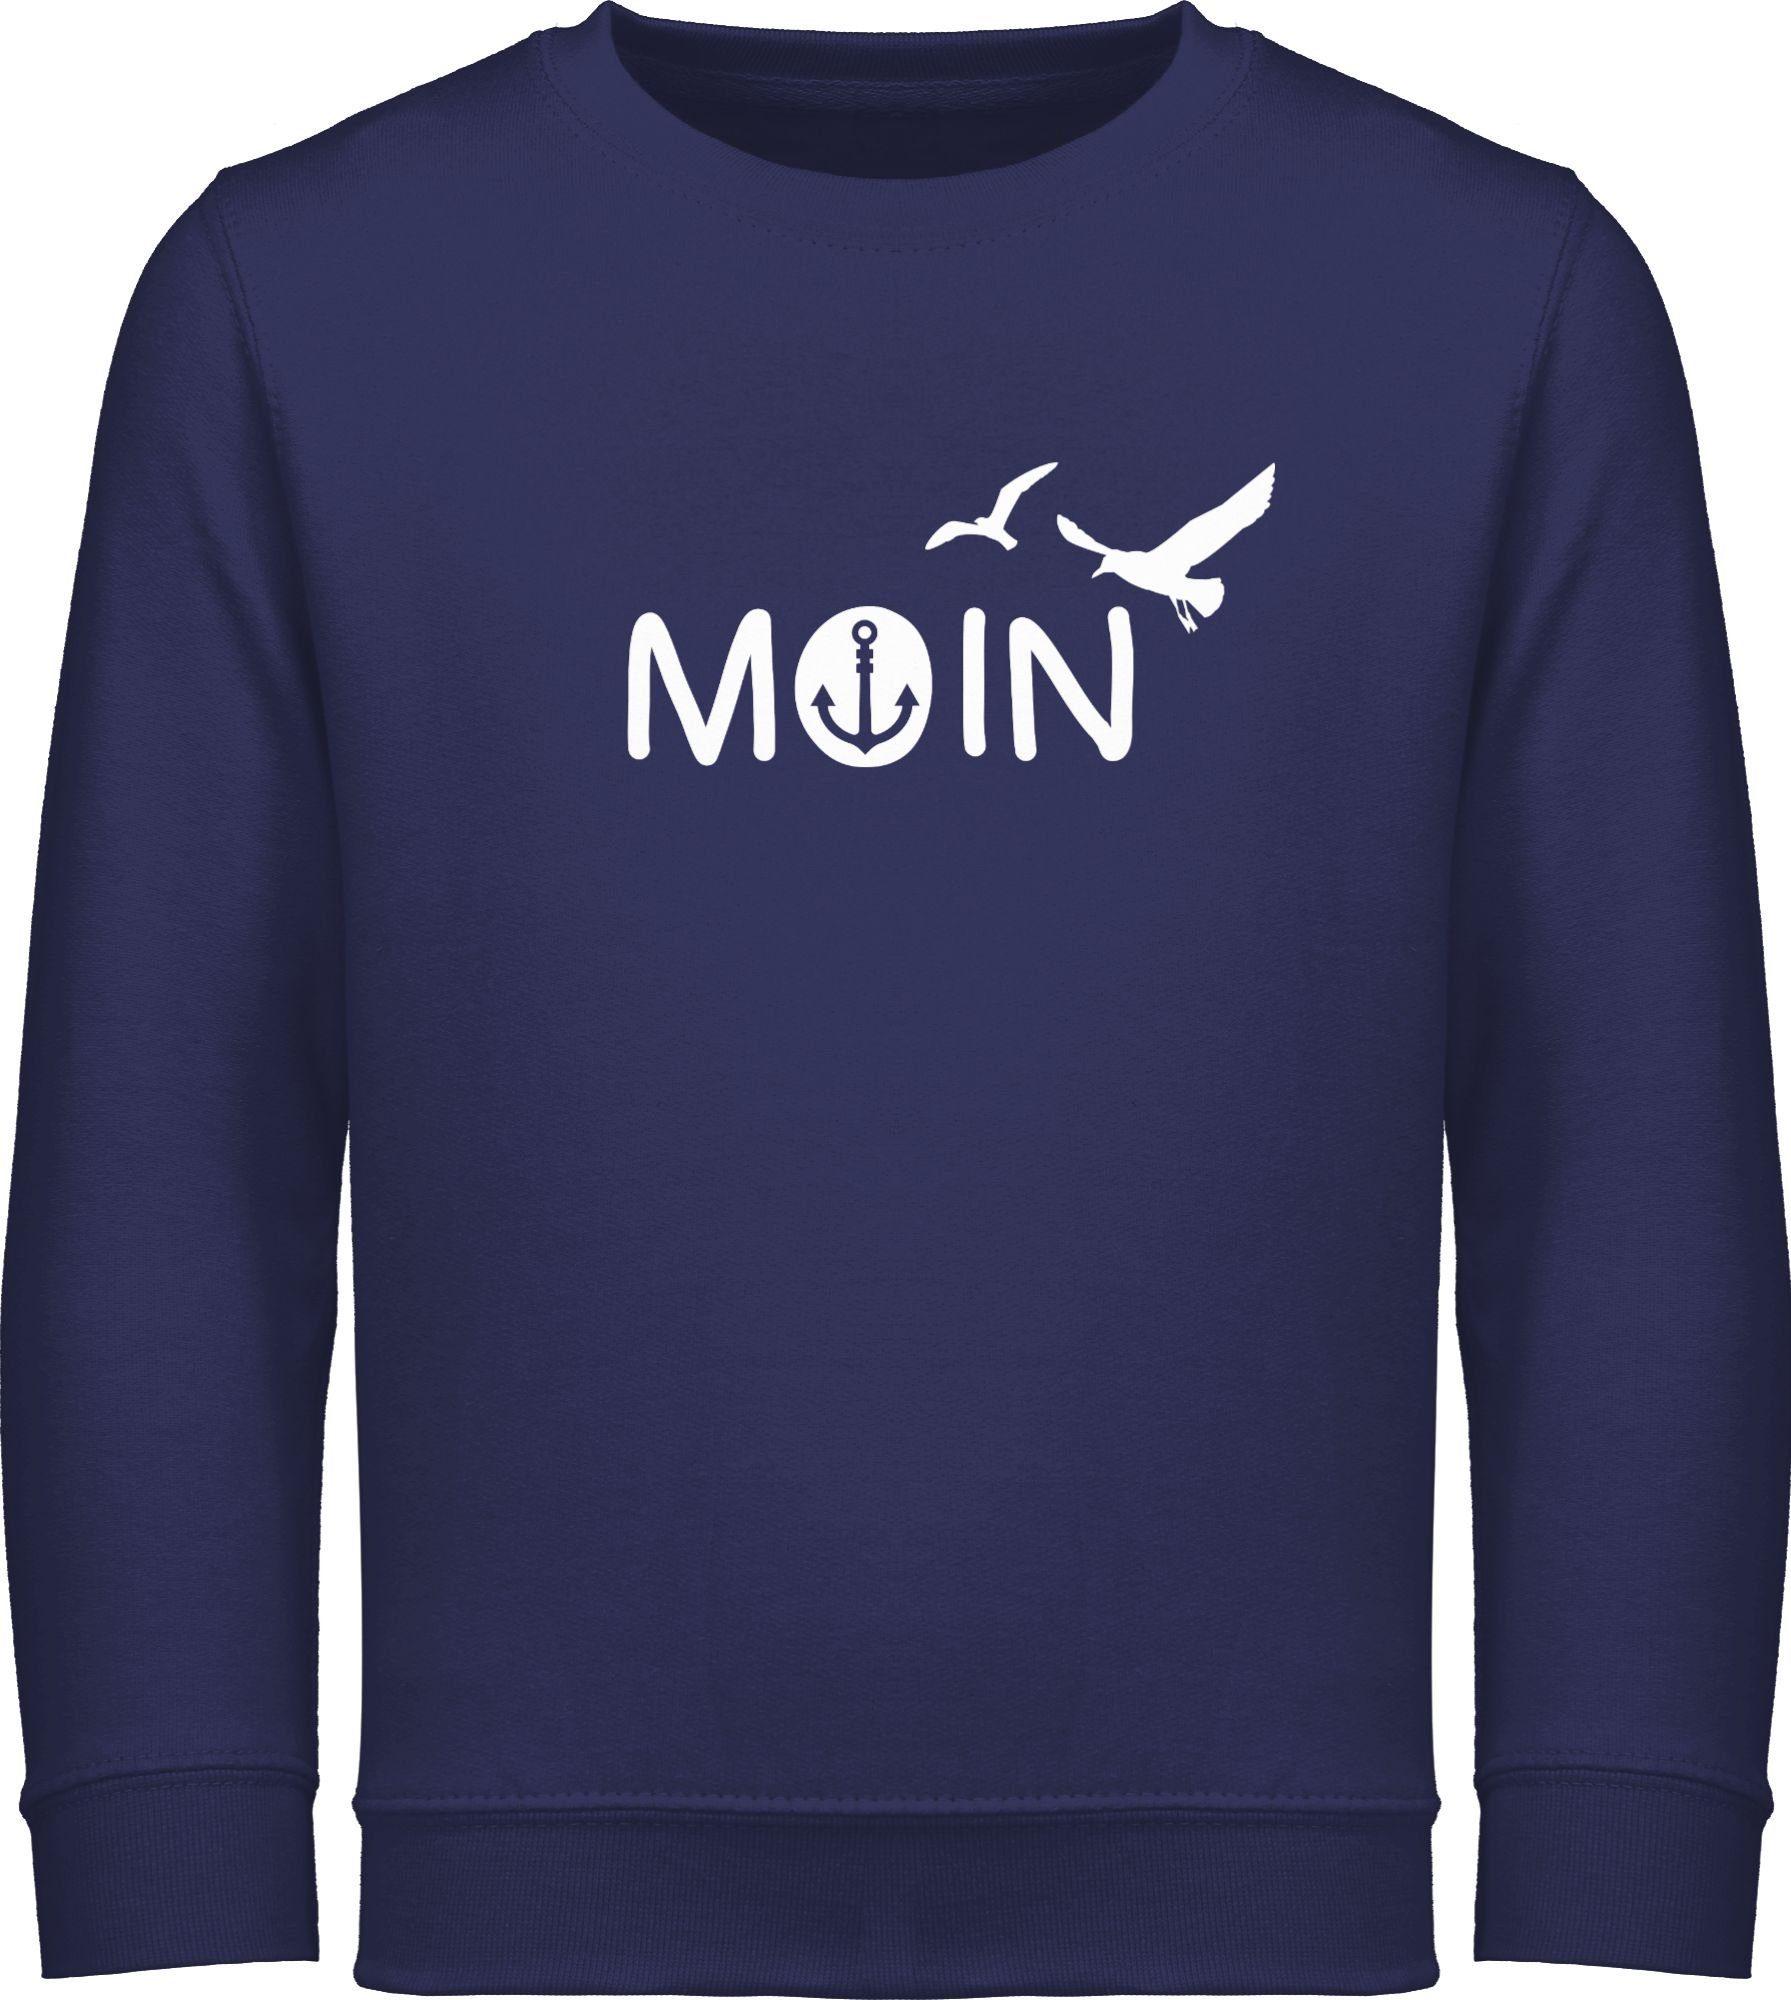 Shirtracer Sweatshirt Moin Moin I Norddeutschland Kinderkleidung und Co 1 Navy Blau